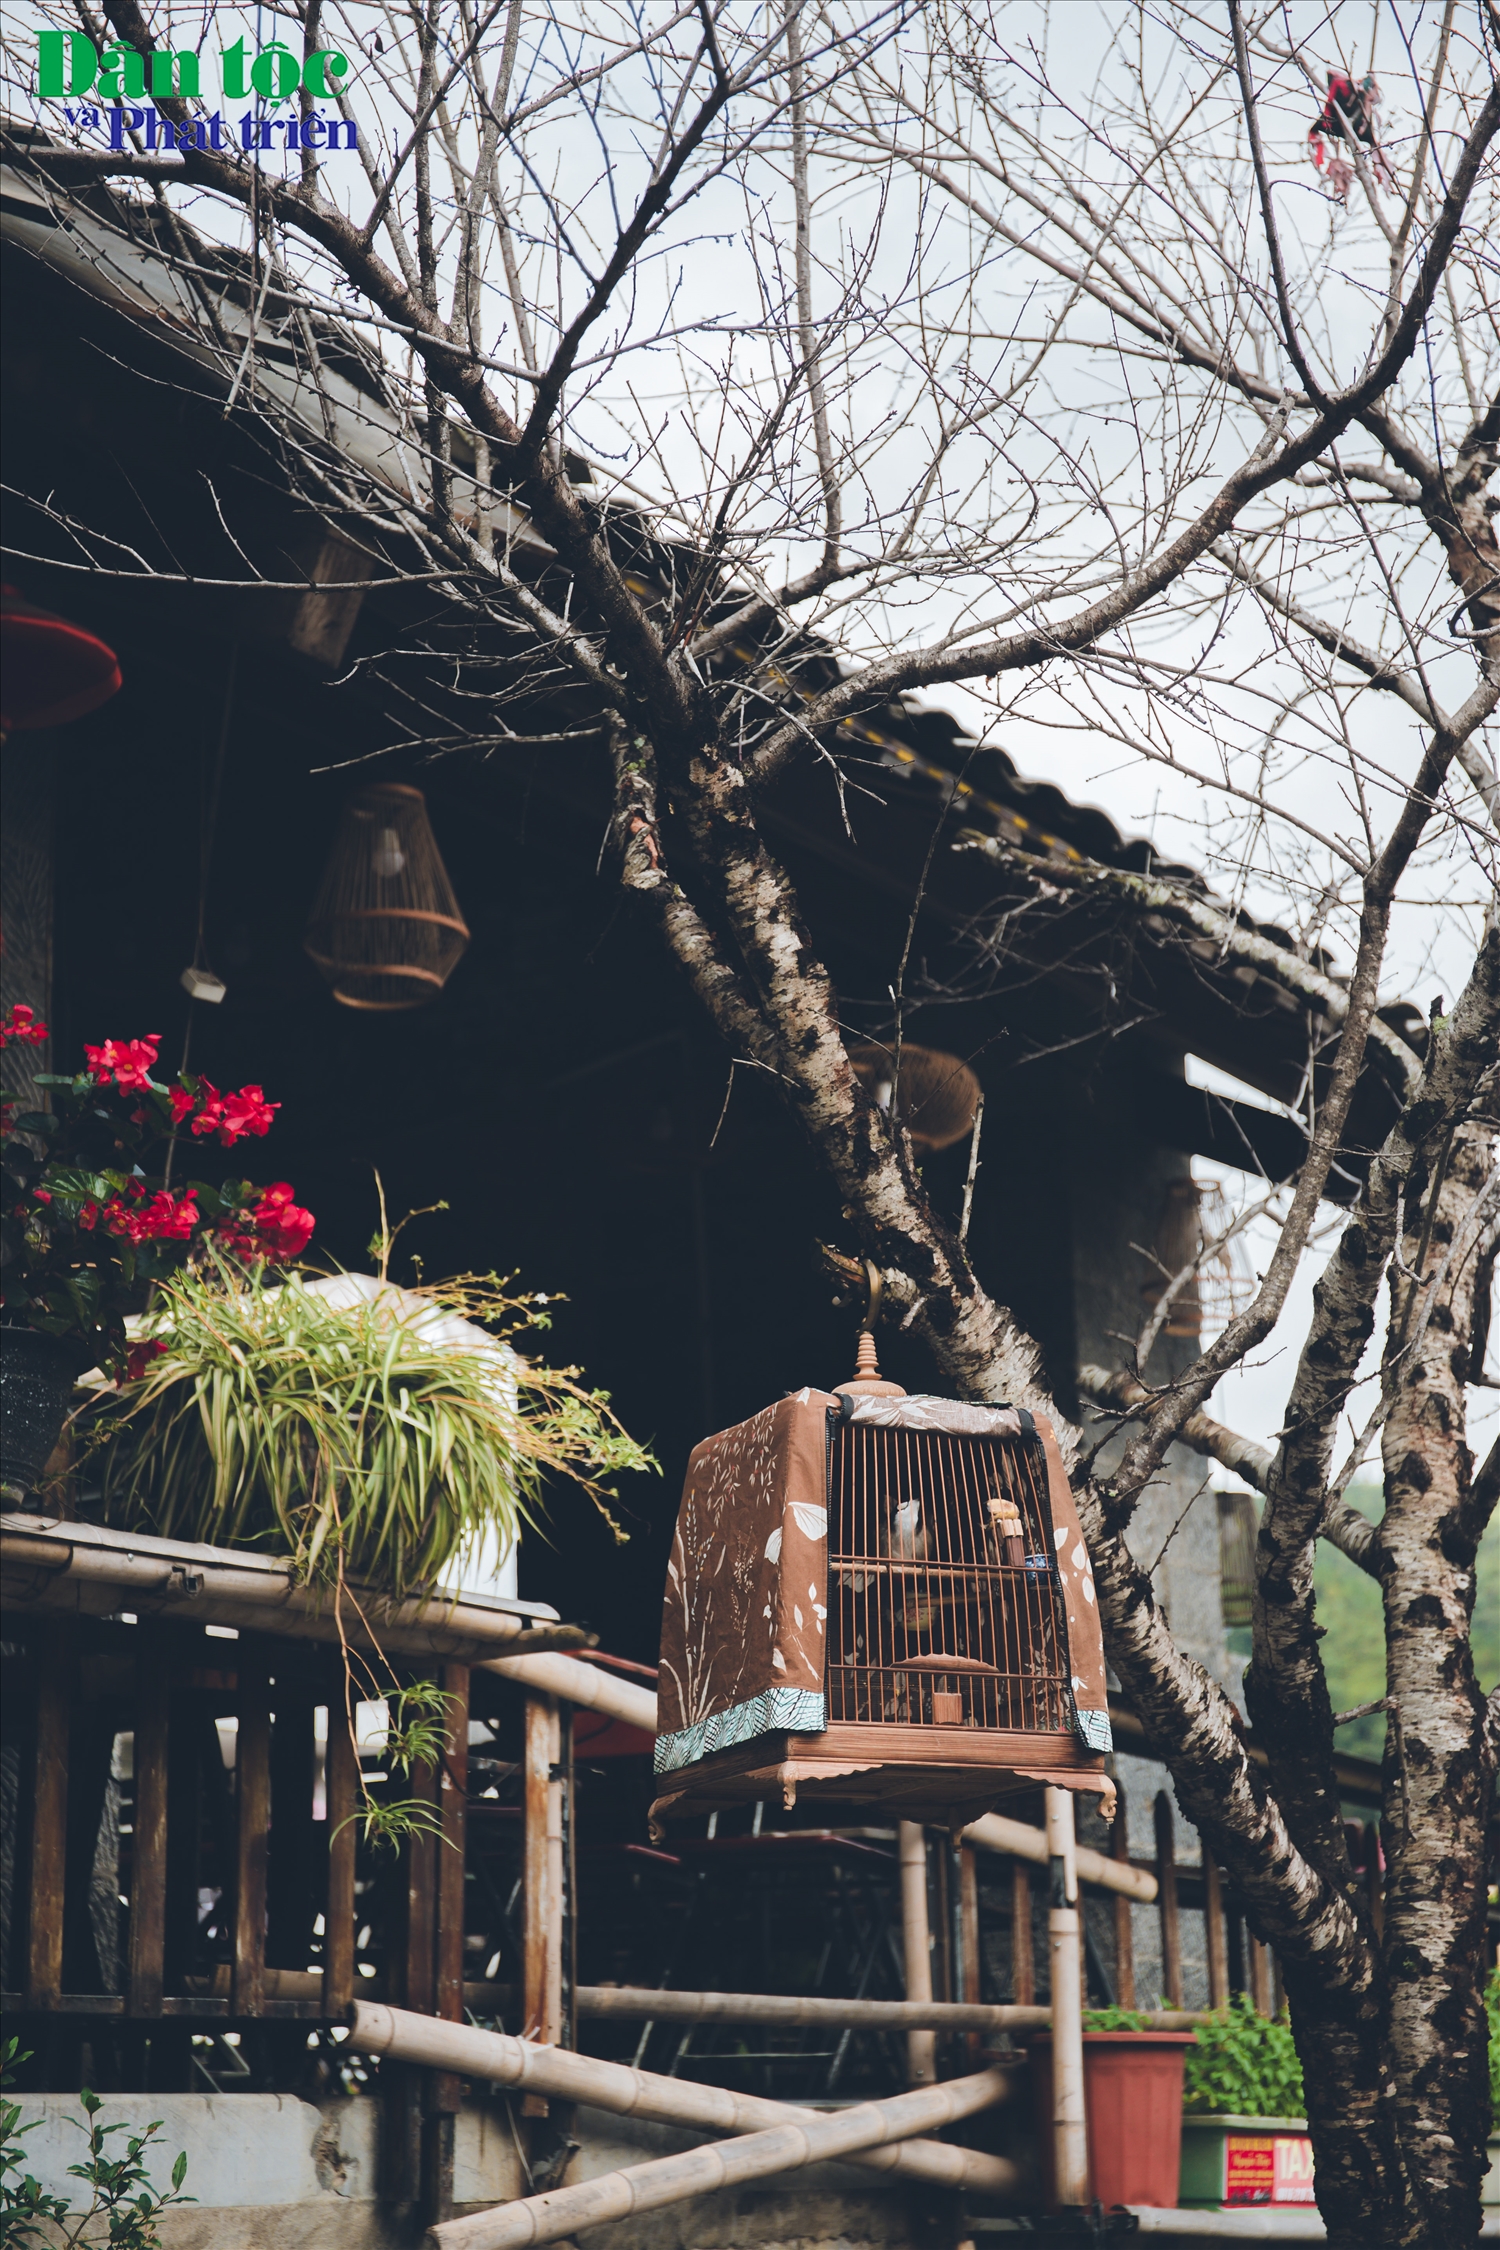 Hiện nay có rất nhiều loại hình lưu trú được xây dựng ngay trong phố cổ Đồng Văn phục vụ nhu cầu của nhiều du khách.